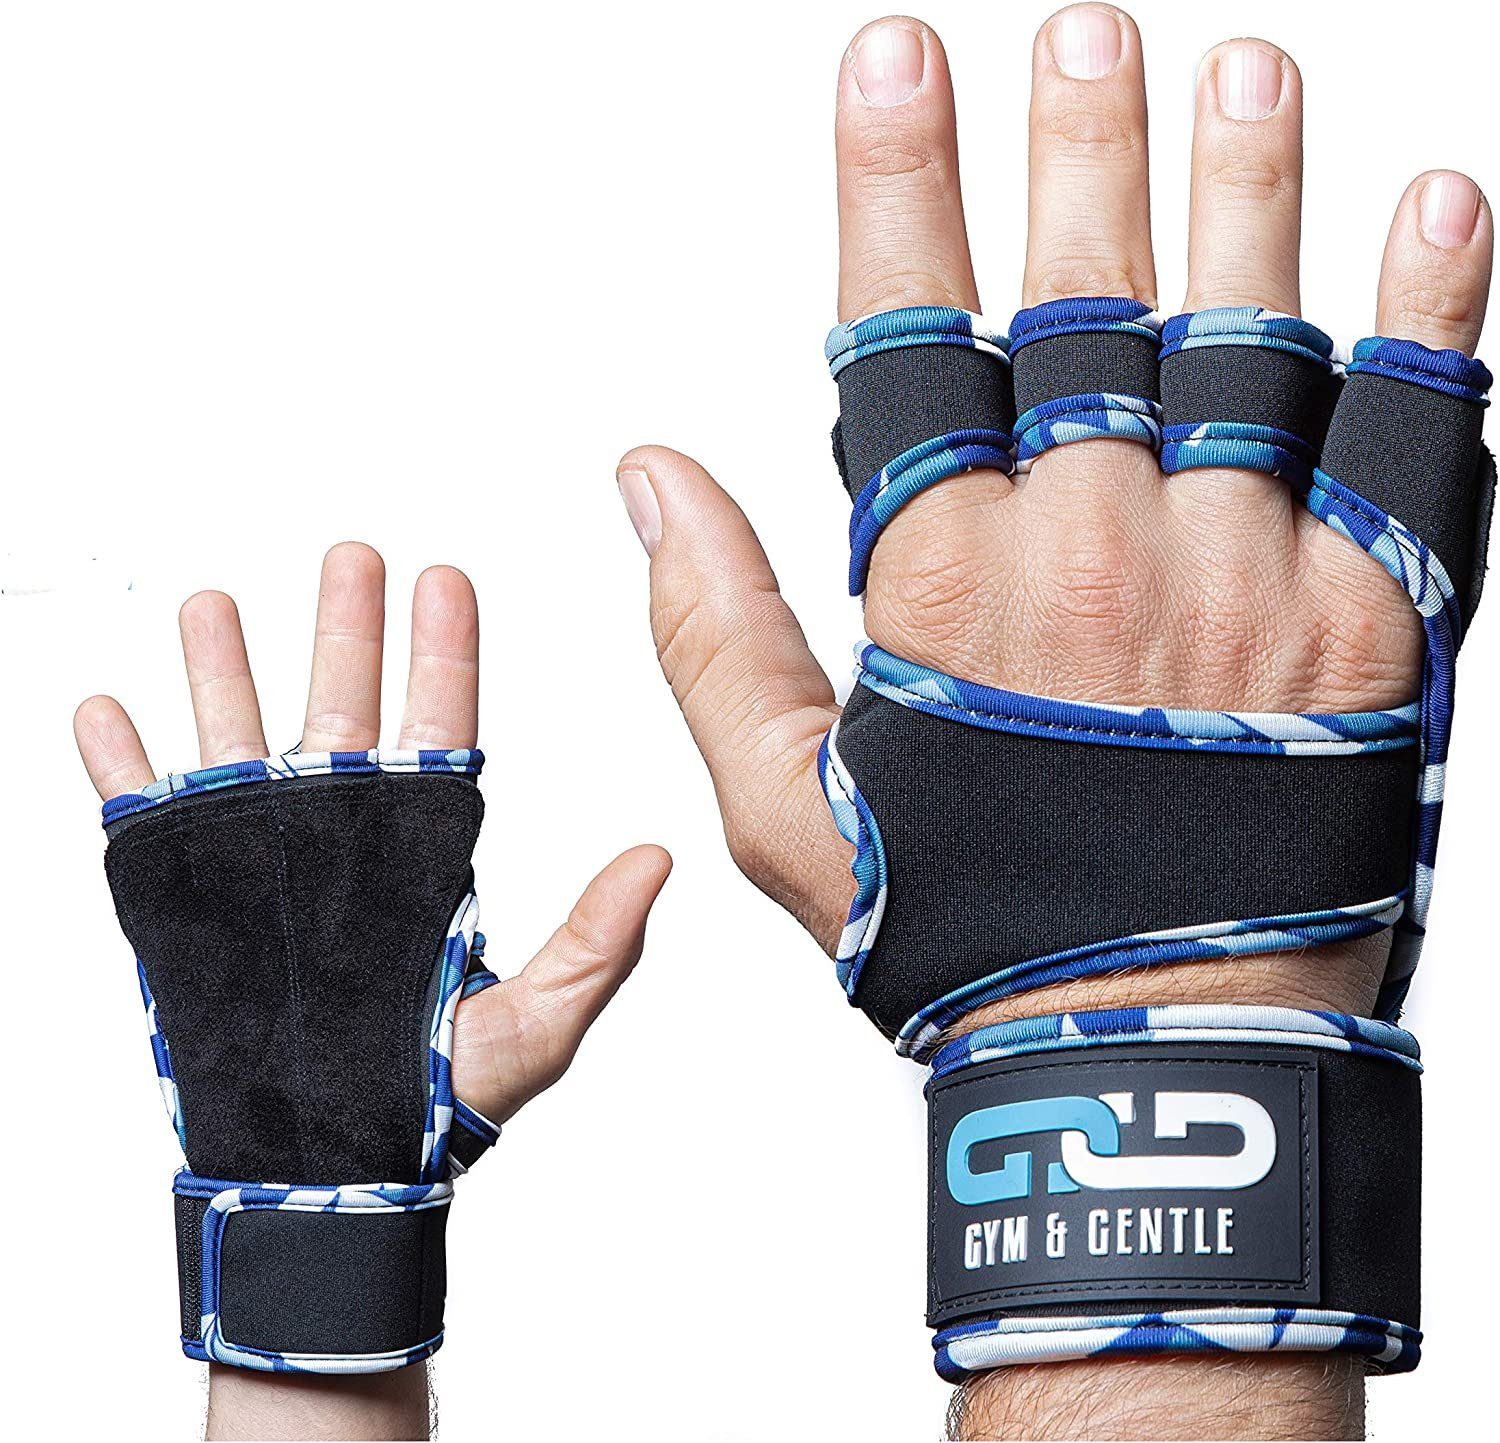 Gym & Gentle Multisporthandschuhe Fitnesshandschuhe mit Handgelenkstütze für Männer und Frauen geringes Gewicht camo-blue